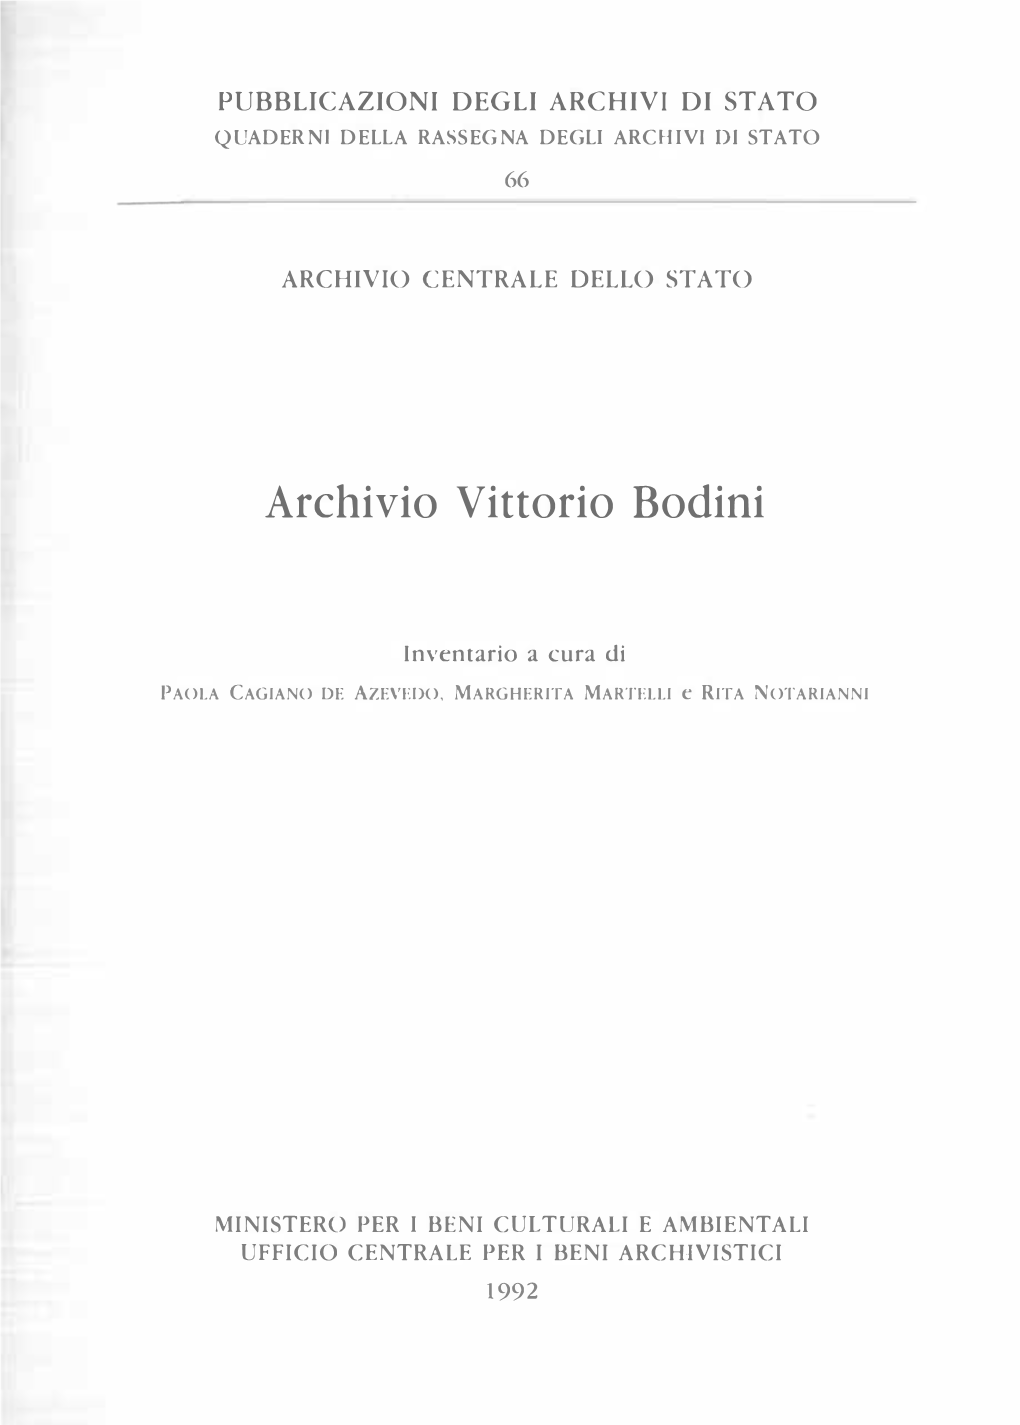 Archivio Vittorio Bodini